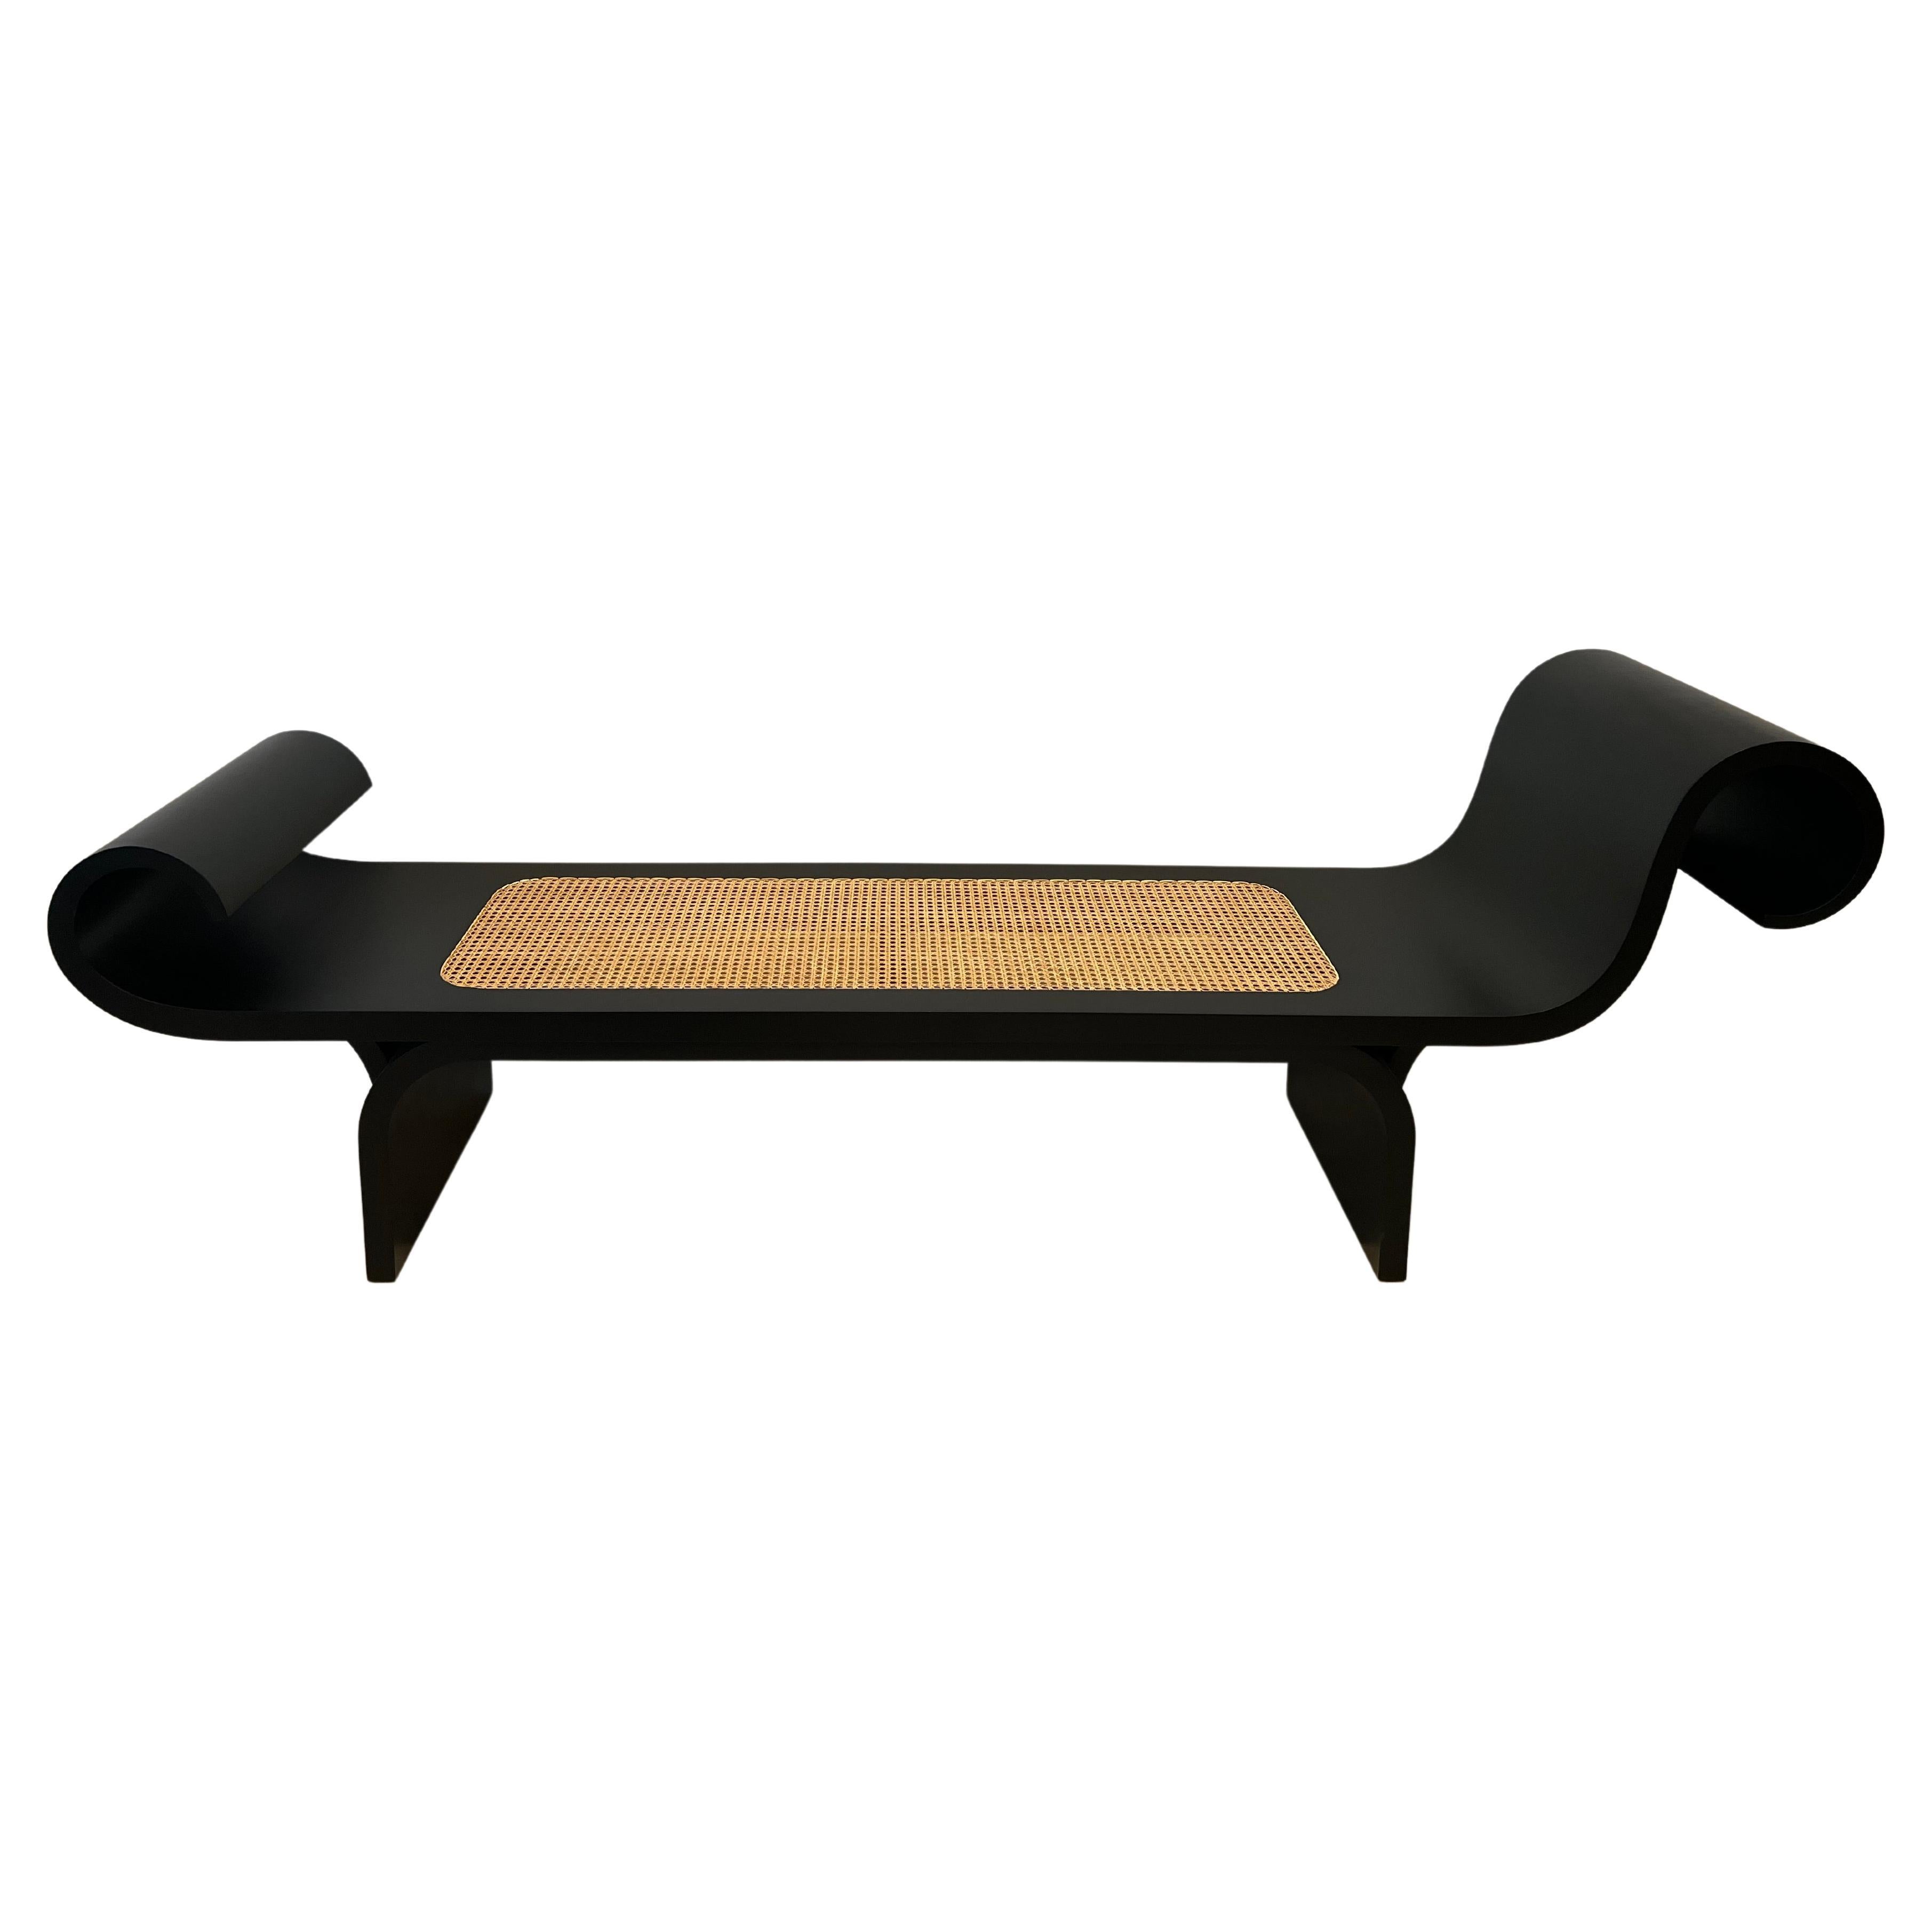 Oscar Niemeyer "Marquesa" Bench For Sale